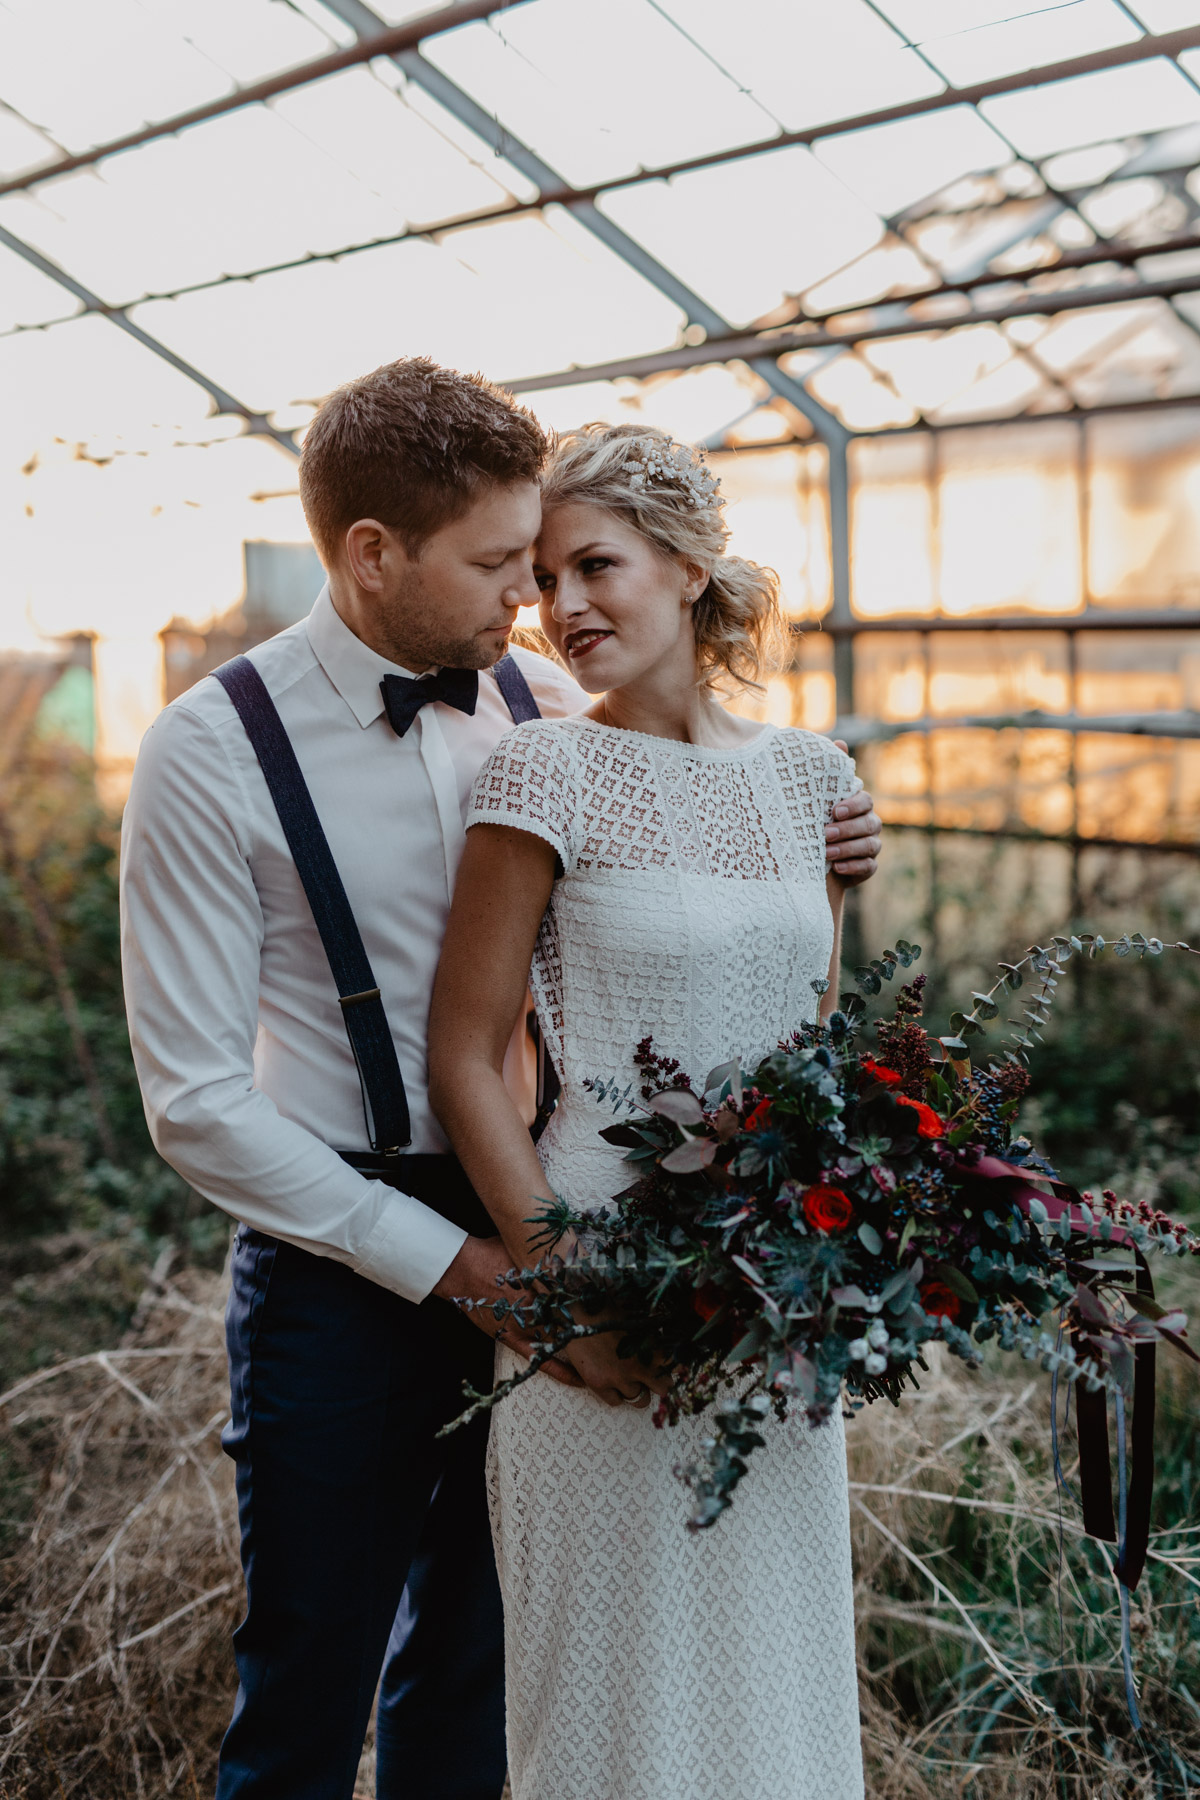 Herbsthochzeit – Brautpaar mit herbstlichem Brautstrauss in einem Gewächshaus